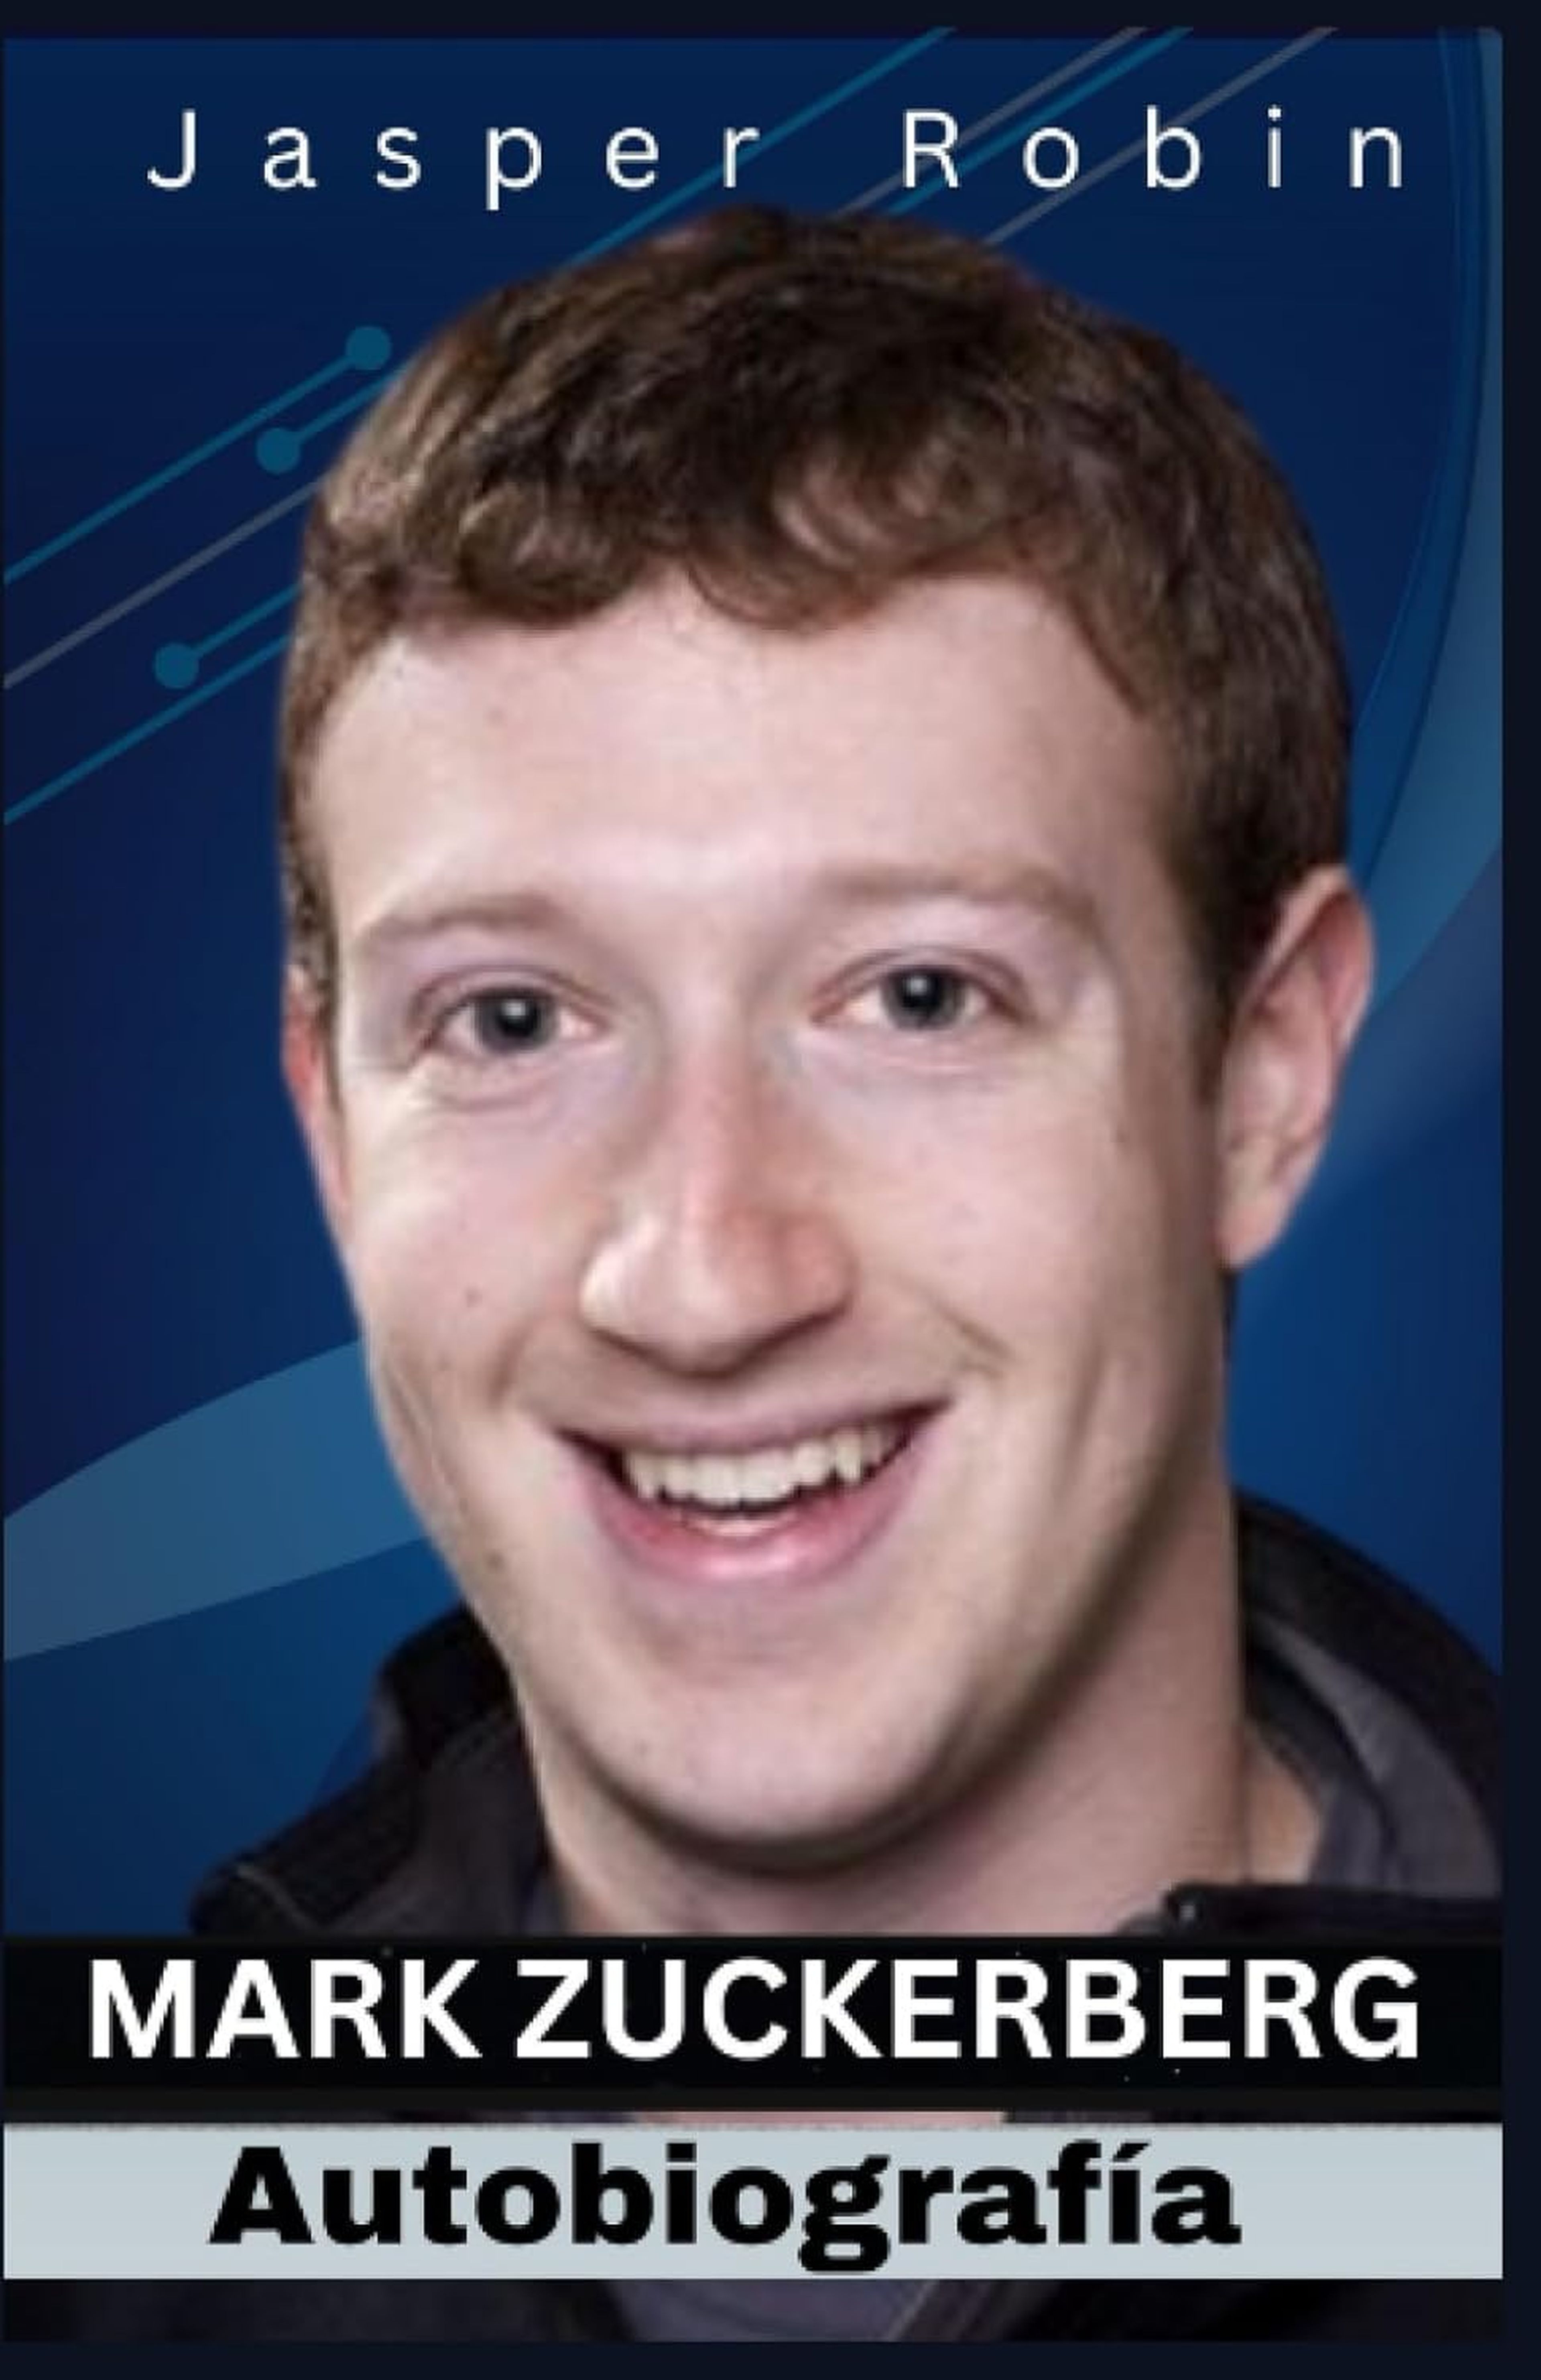 Mark Zuckerberg Autobiografía: El hombre detrás del código